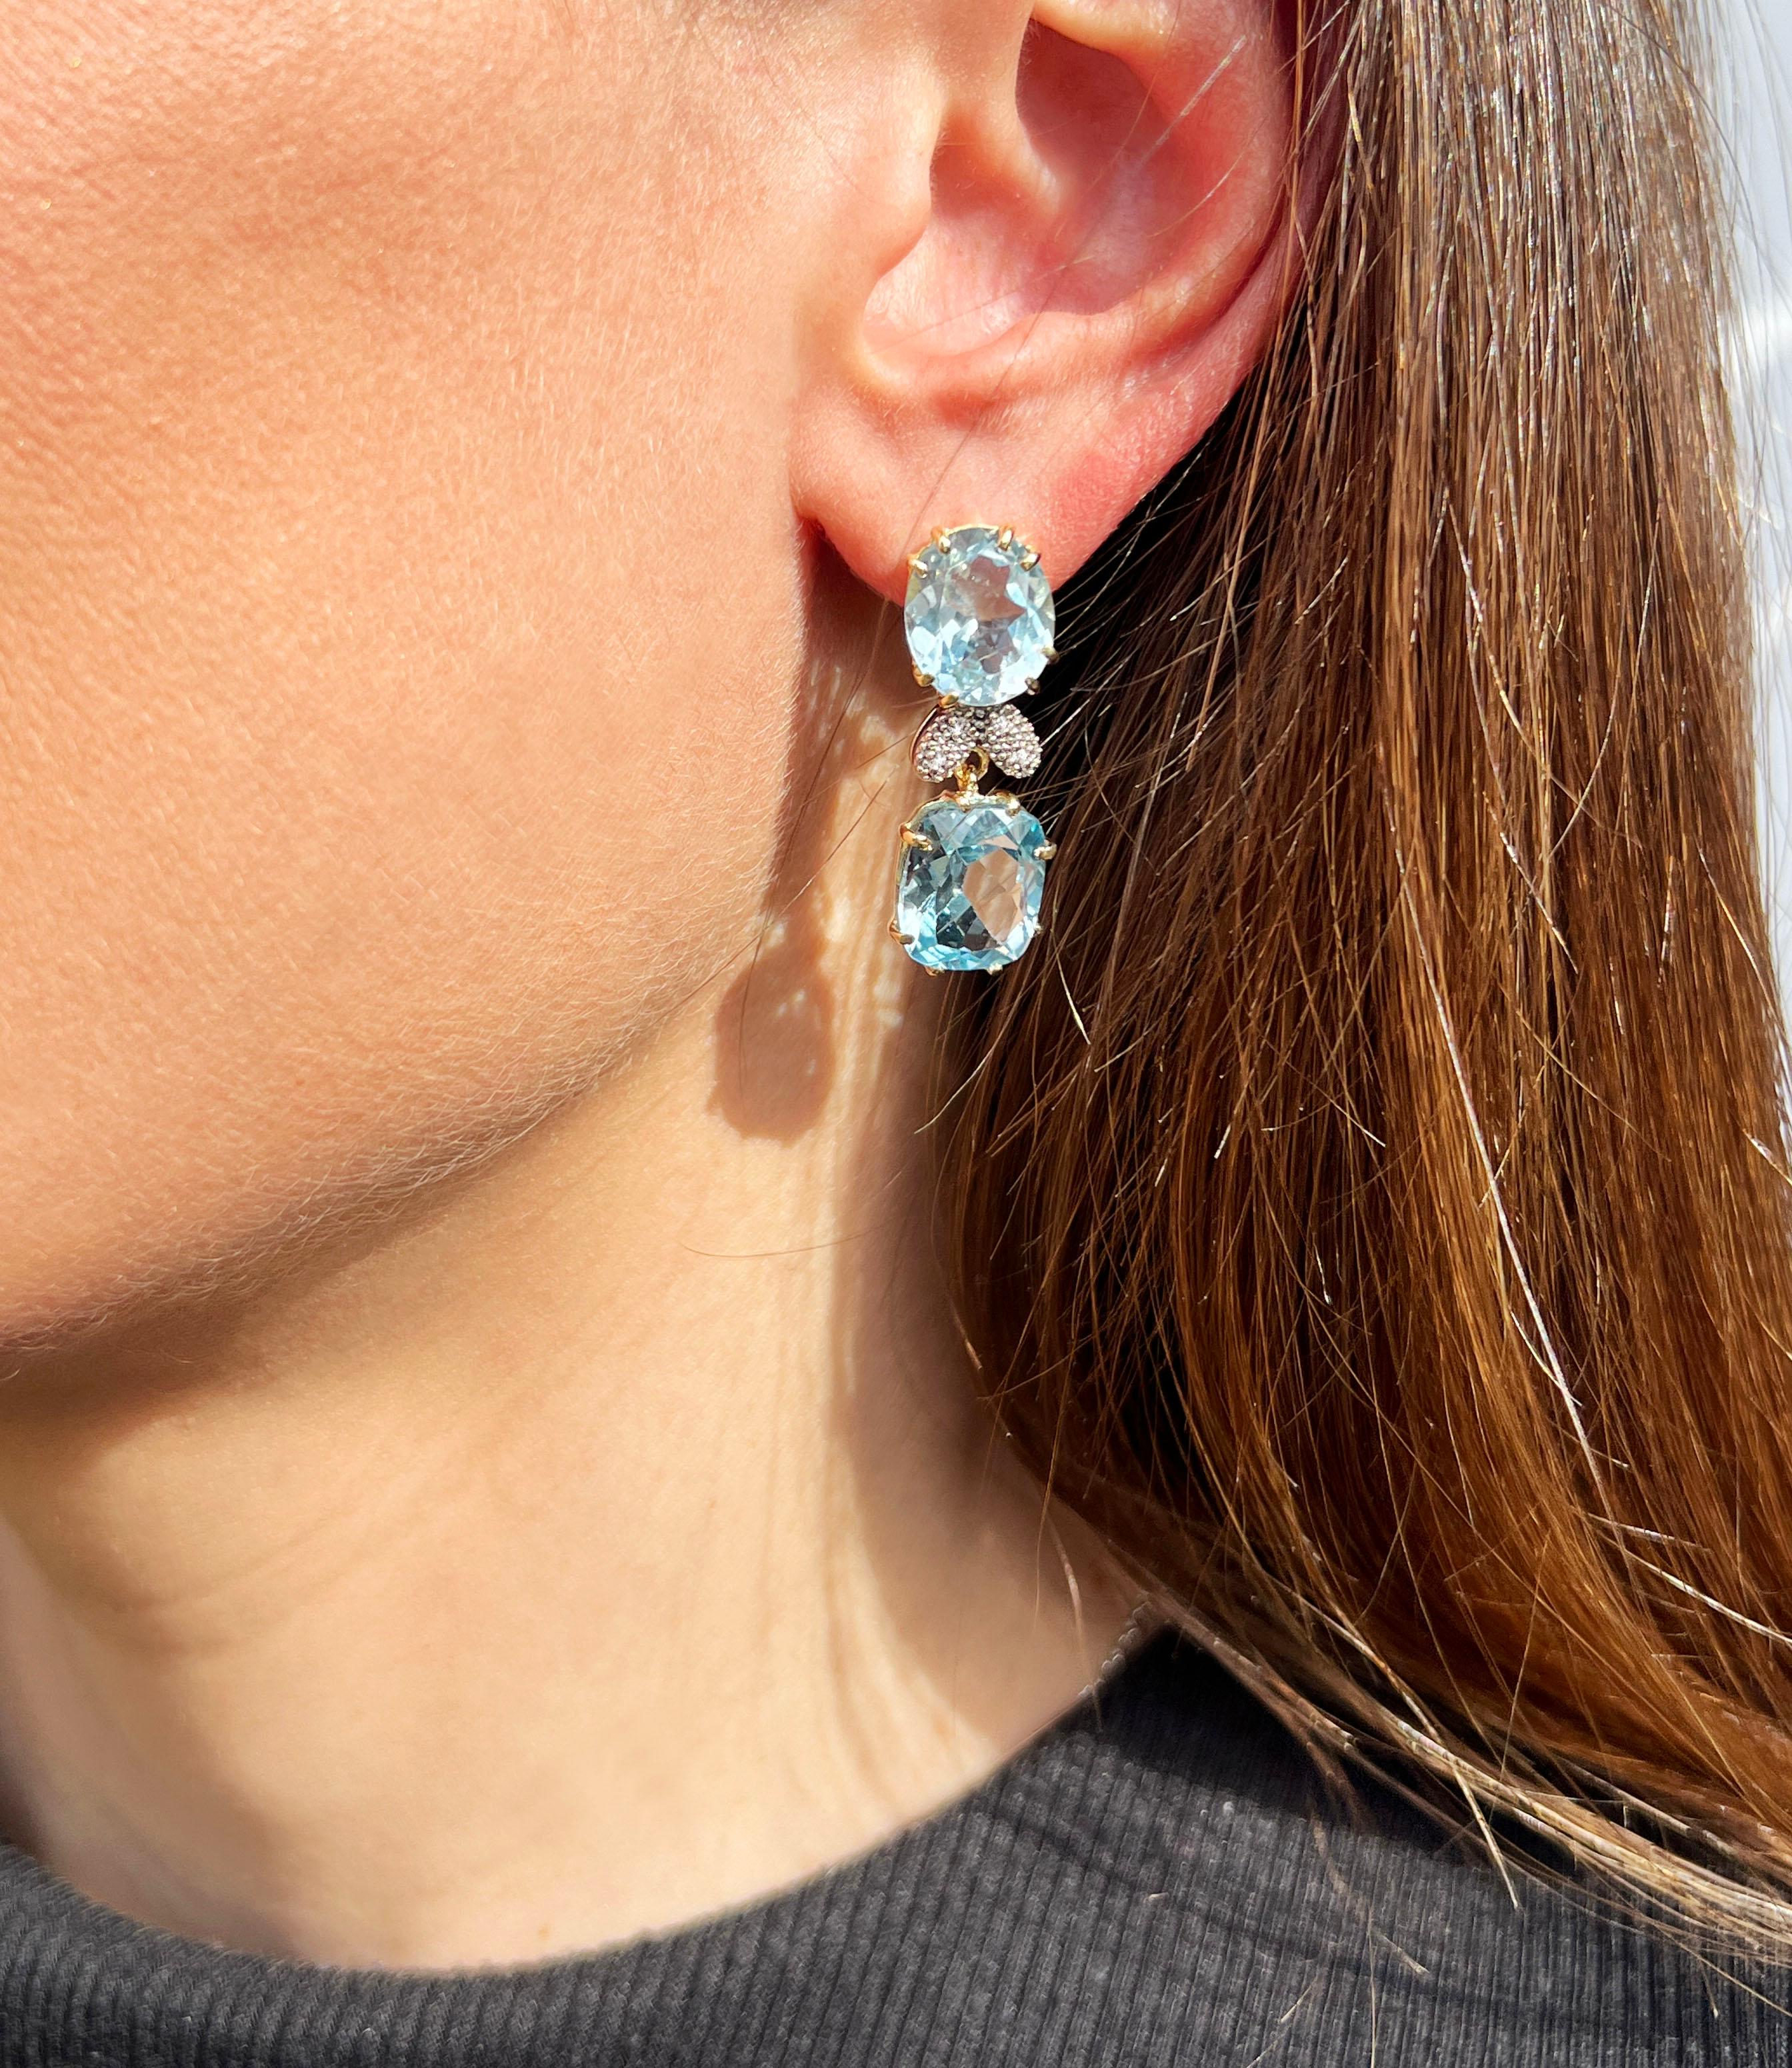 Besondere Ohrringe in verschiedenen Formen mit hellblauem Topas und weißen Diamanten.  Besondere Ohrringe mit verschiedenen Formen mit blauem Topas. Das Design von Gisella ist von der modernen Frau und ihren Wünschen inspiriert, Ohrringe, die man